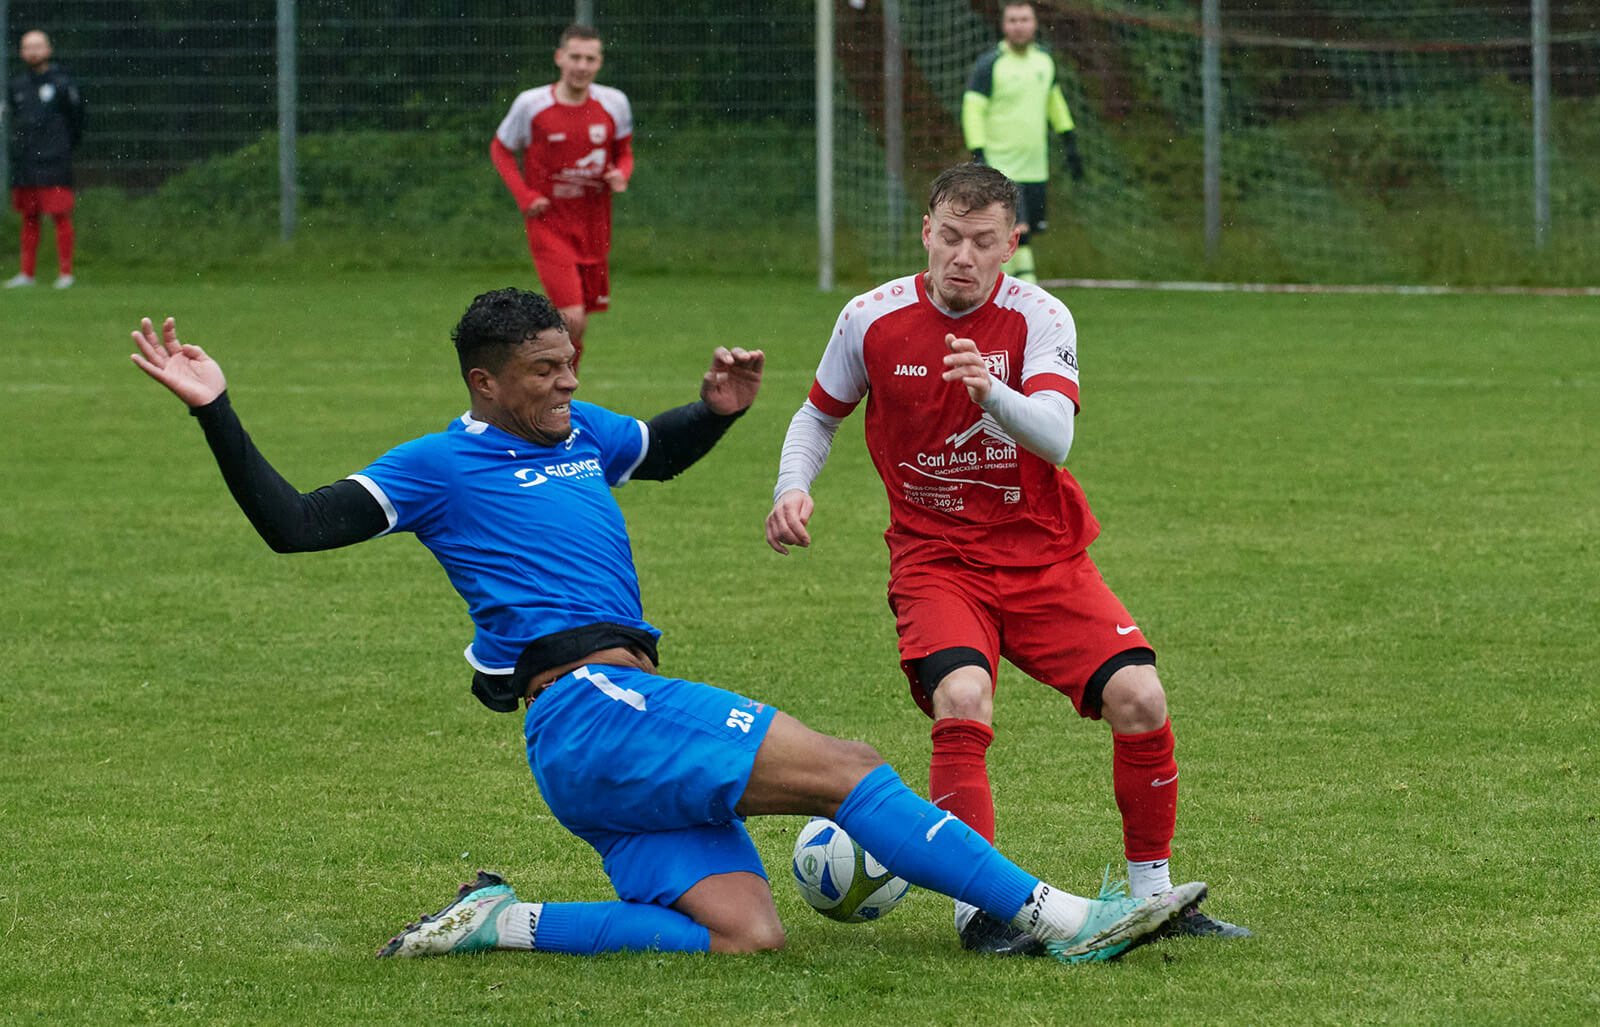  TSV Neckarau - SC Käfertal, Kreisliga, v.l. Käfertals Percy Nadler gegen Neckaraus Sandro Egner. Foto: Berno Nix